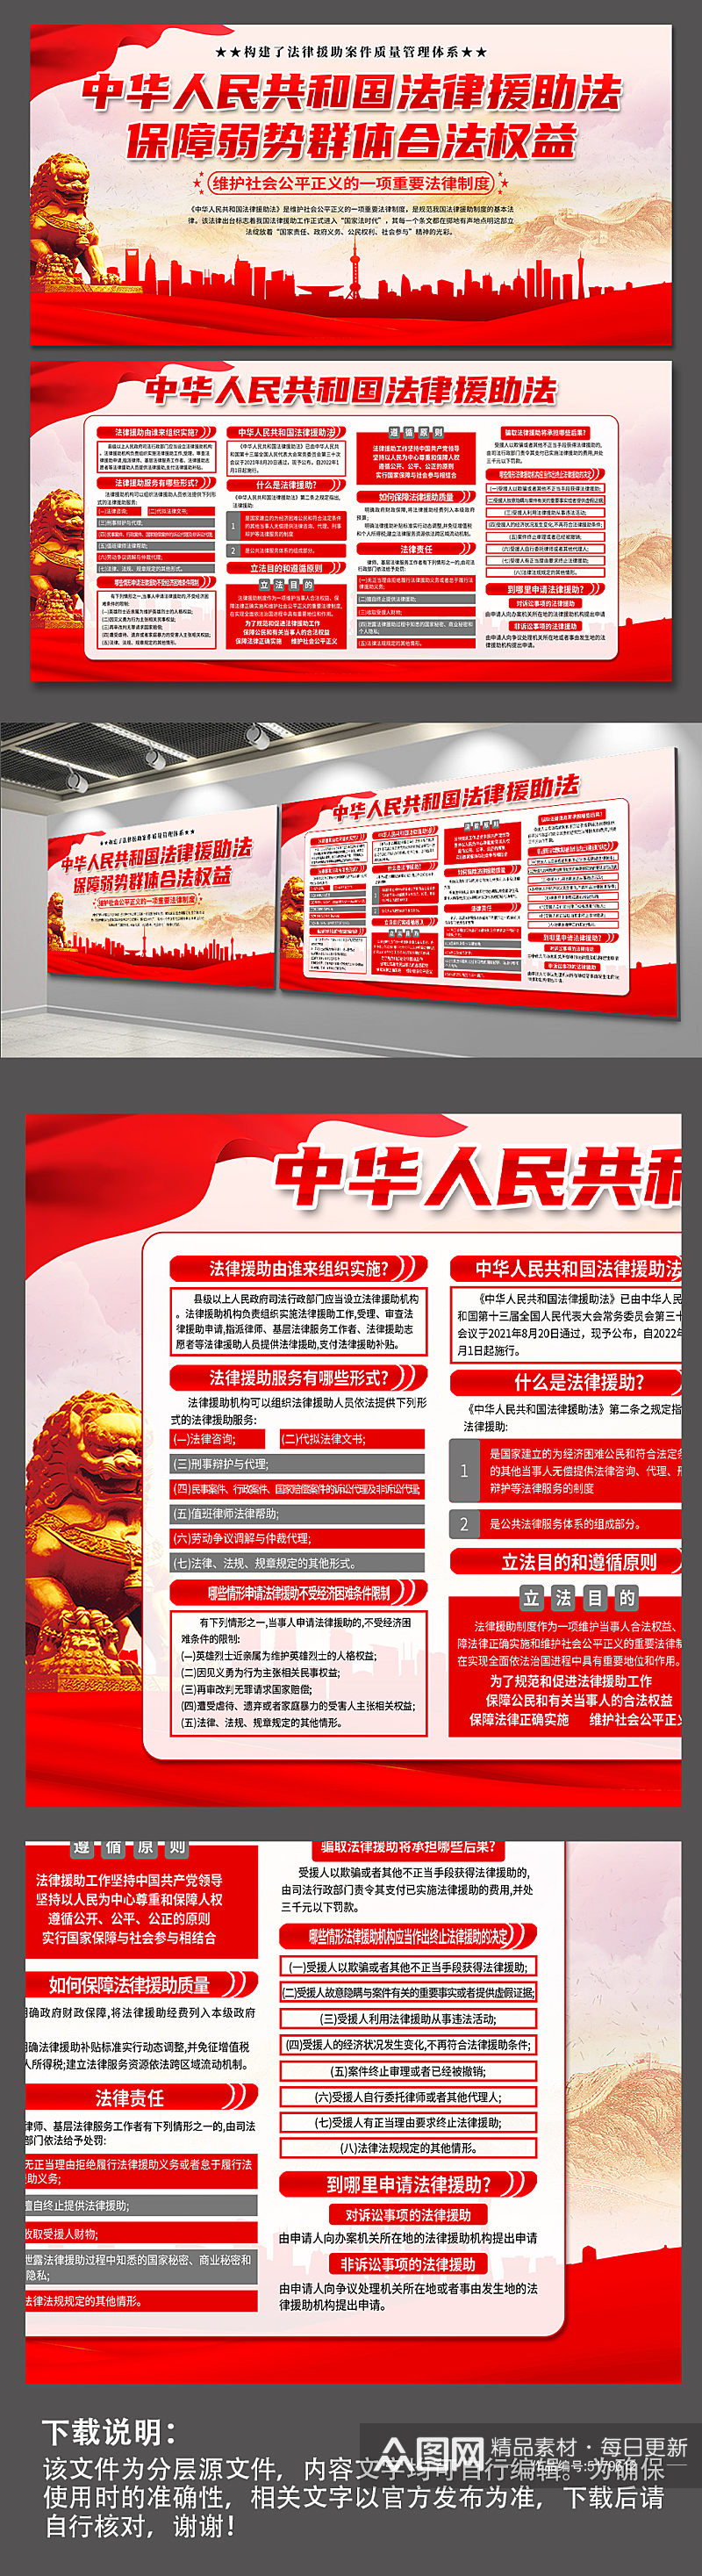 红色中华人民共和国法律援助法党建展板素材